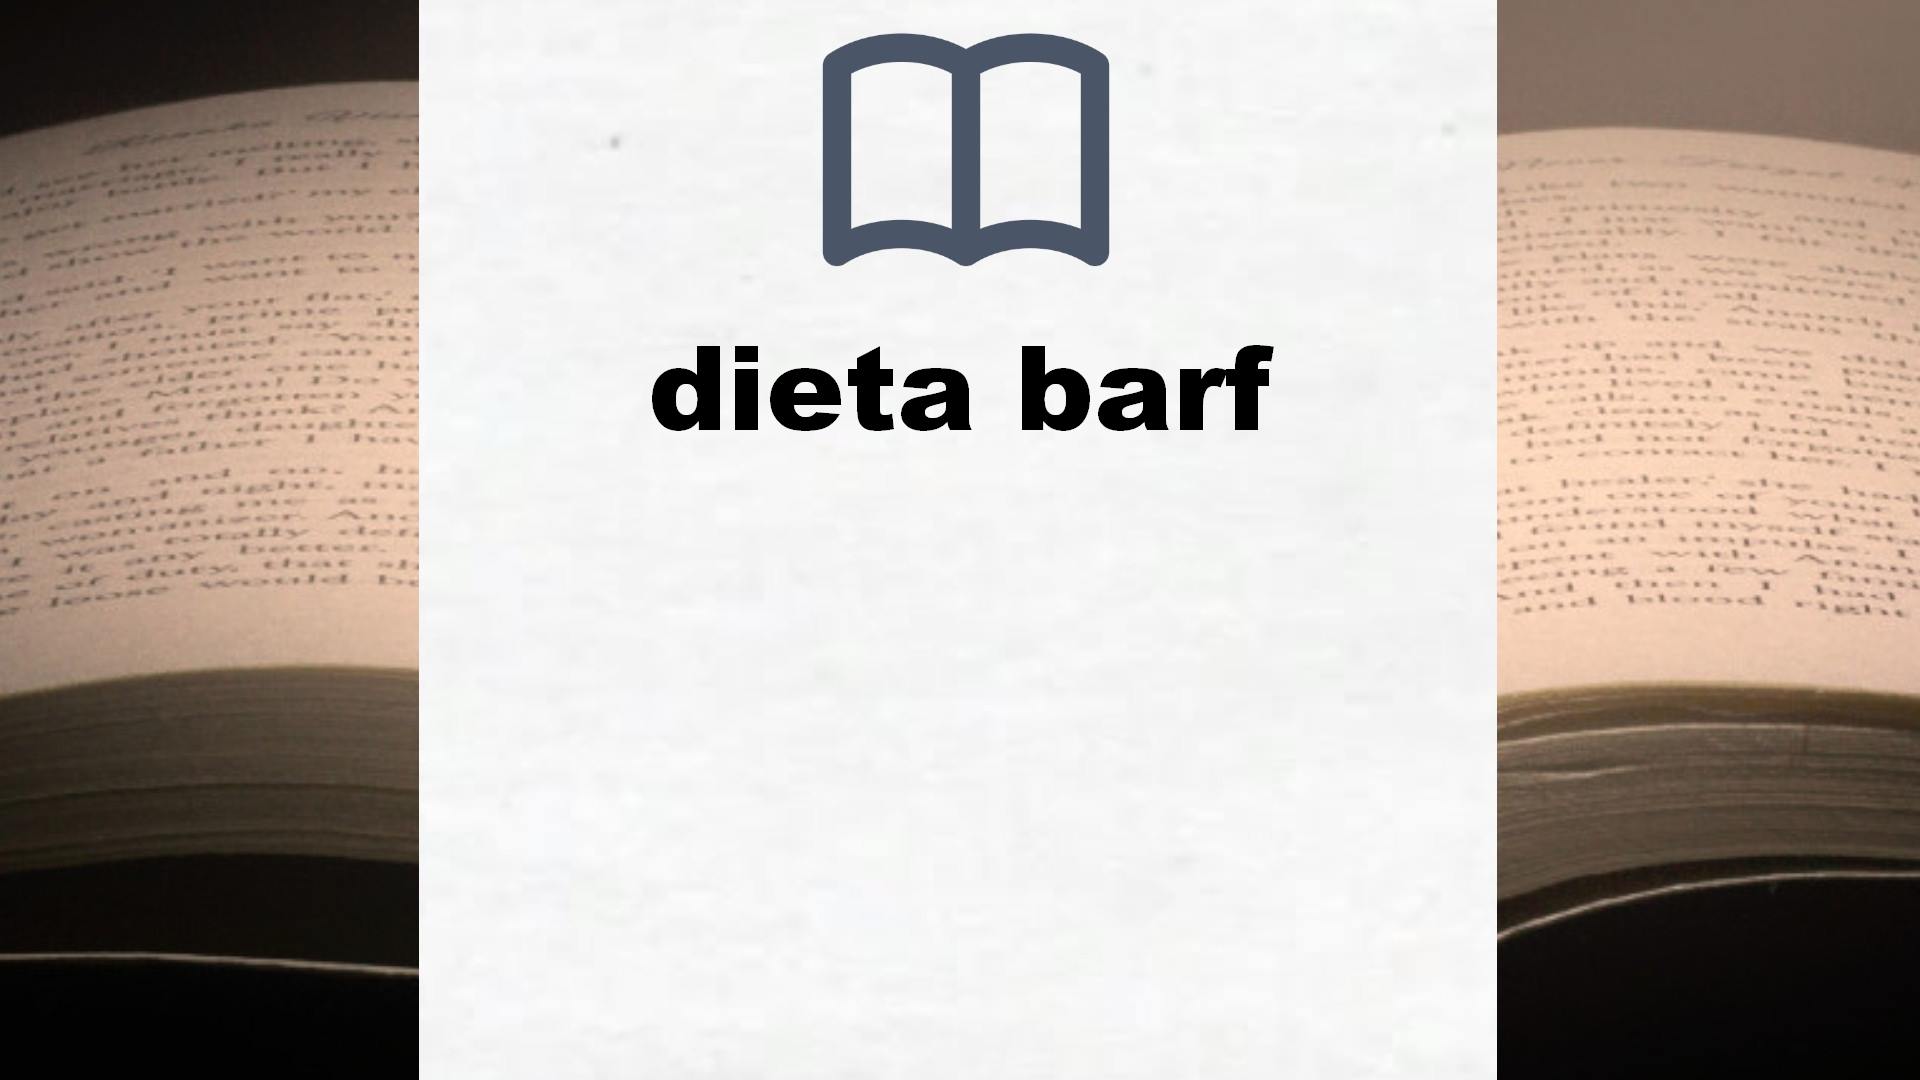 Libros sobre dieta barf